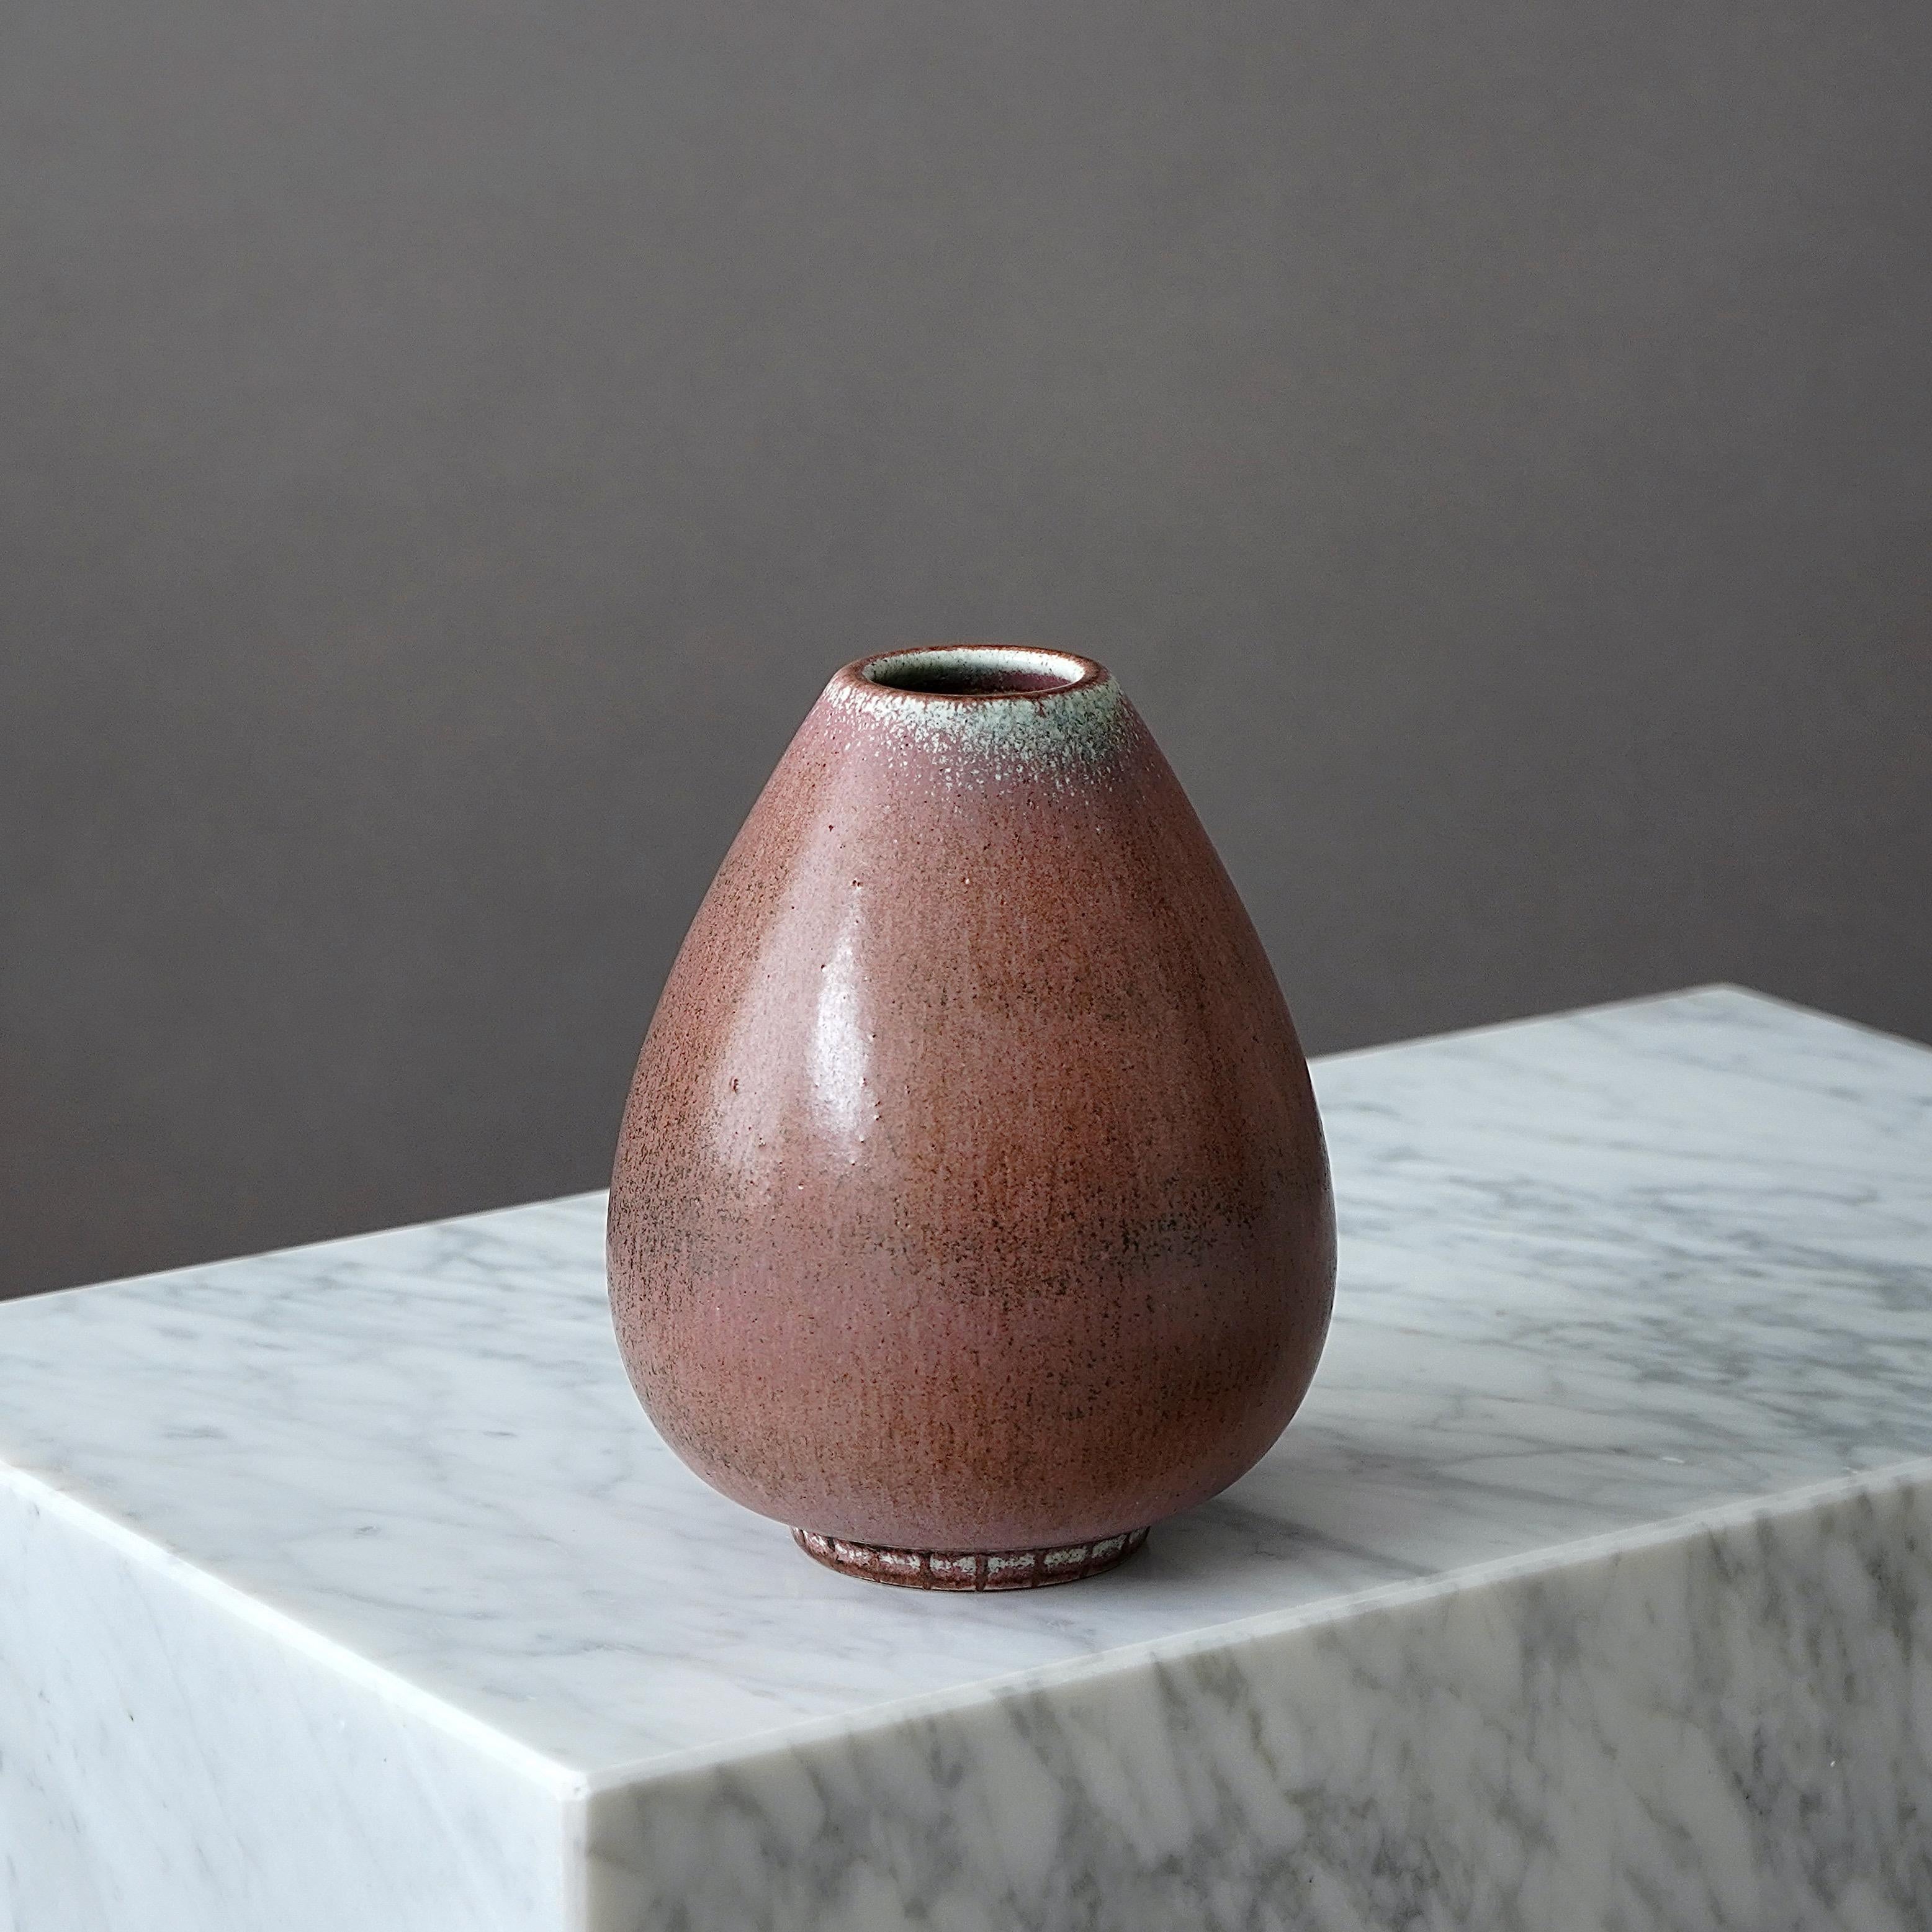 Un vase en grès magnifique et unique avec une glaçure étonnante et rare. 
Conçu par Gunnar Nylund pour Rorstrand, Suède, années 1940.  

Signature incisée 